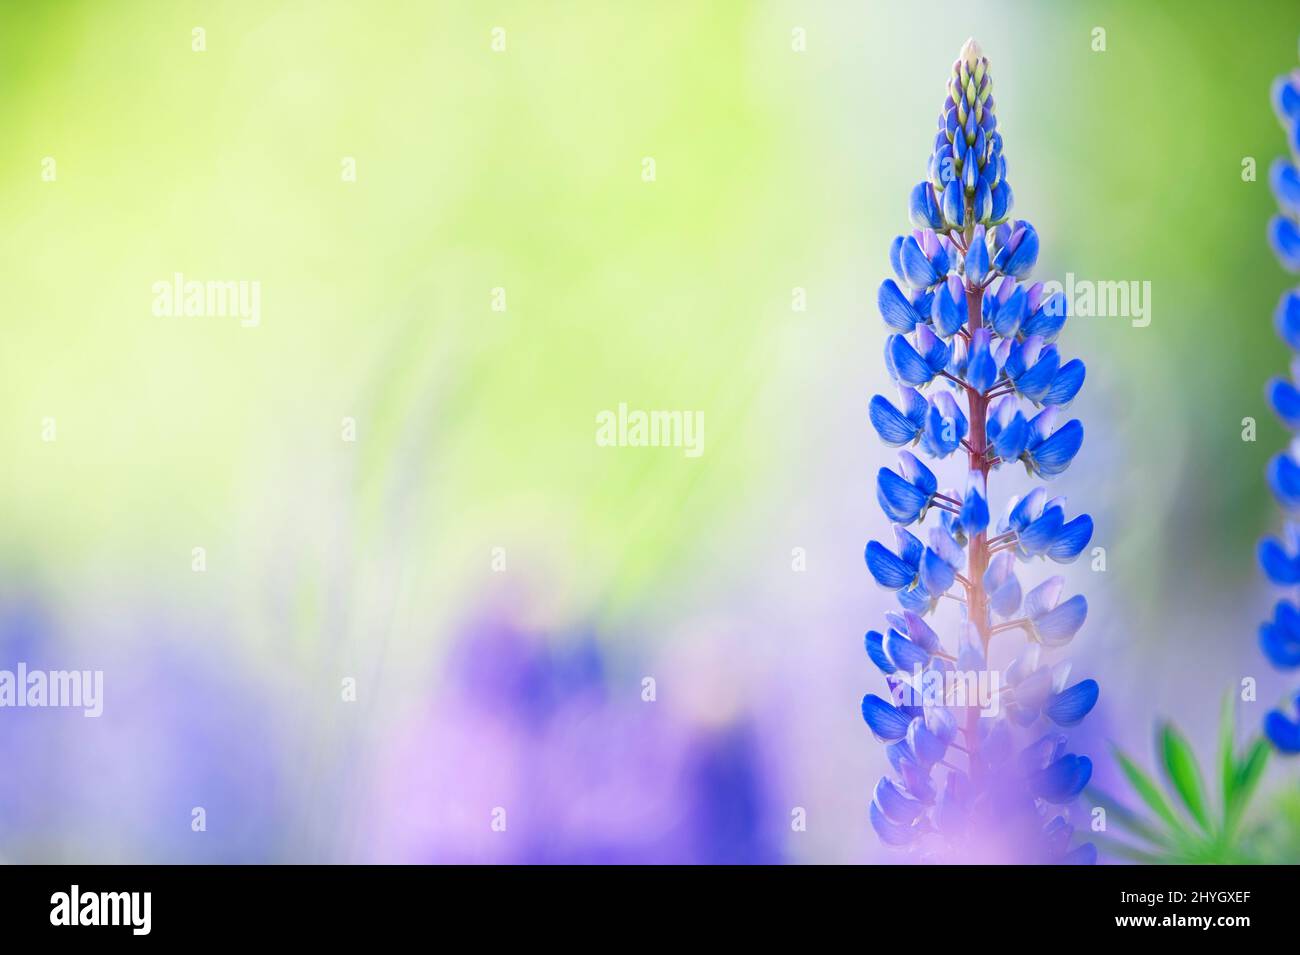 Lupins bleus (Lupinus polyphyllus) qui fleurissent dans le champ. Mise au point sélective, arrière-plan flou avec effet de flou flou. Banque D'Images